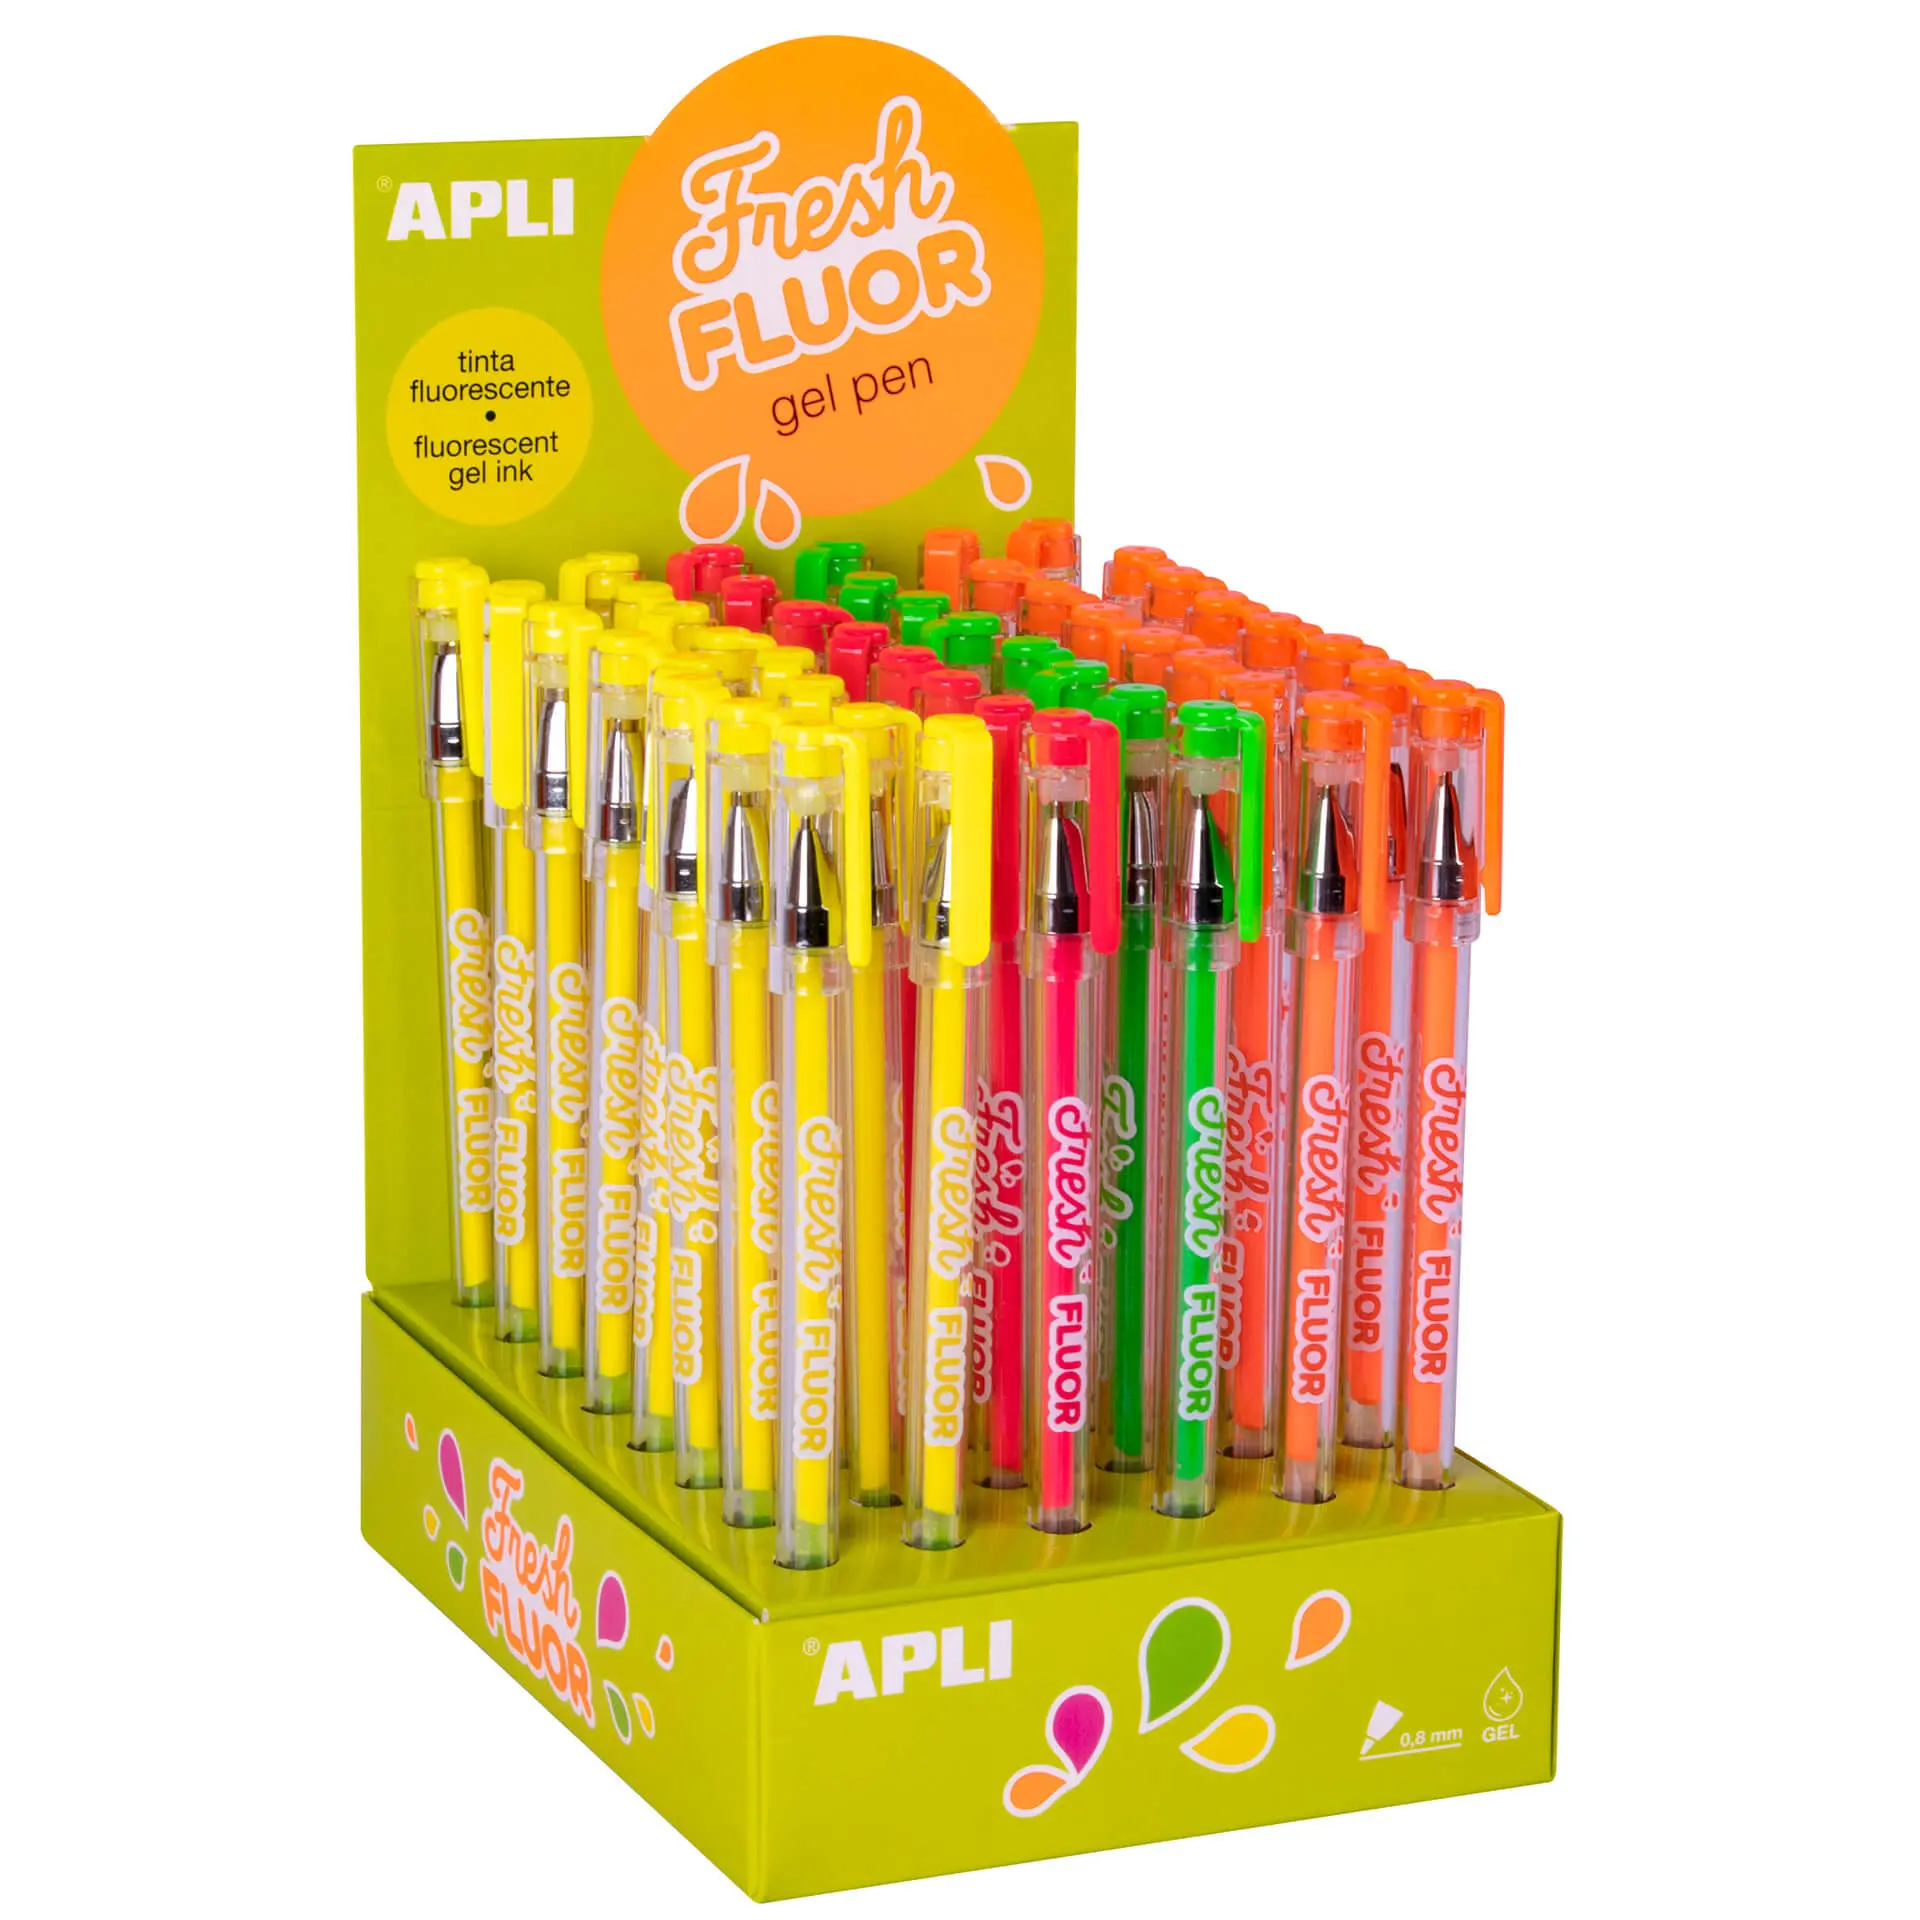 Apli Gel Pen Fresh Fluor - 48 Boligrafos de Tinta Gel Fluorescente - Secado Rapido y Larga Duracion 